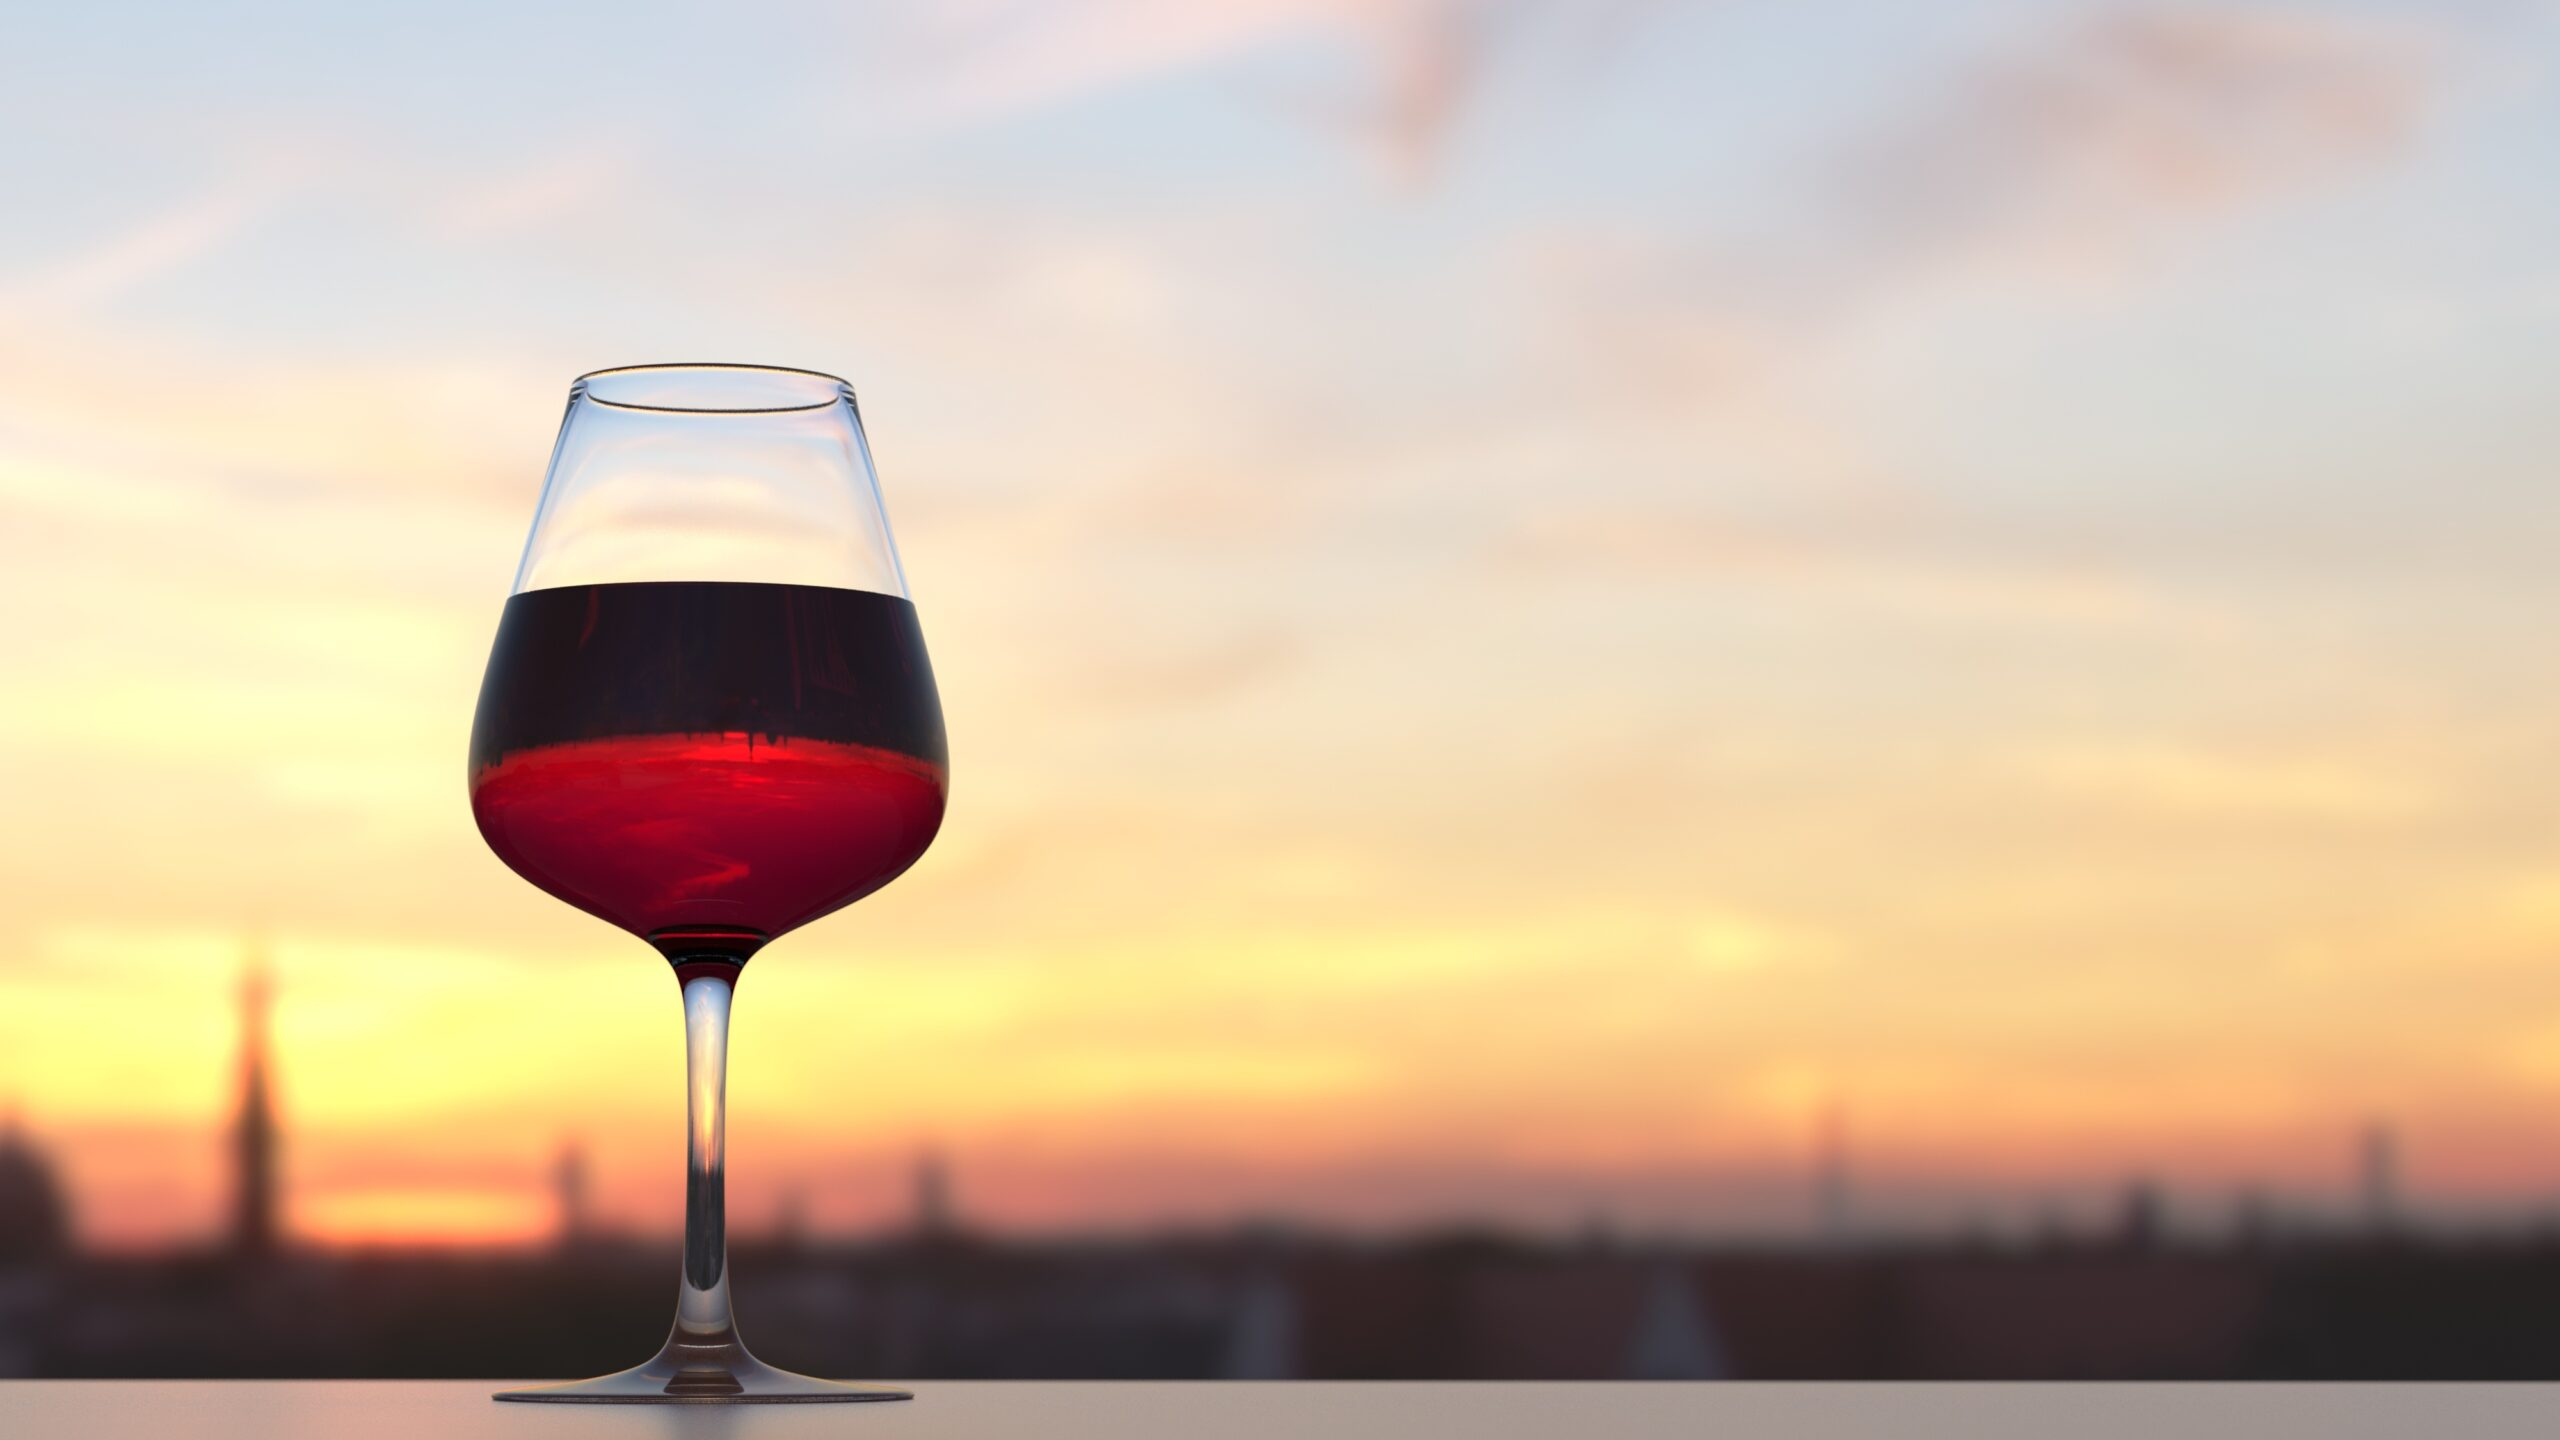 Исследование выявило, что таится в вашем бокале, кроме вина